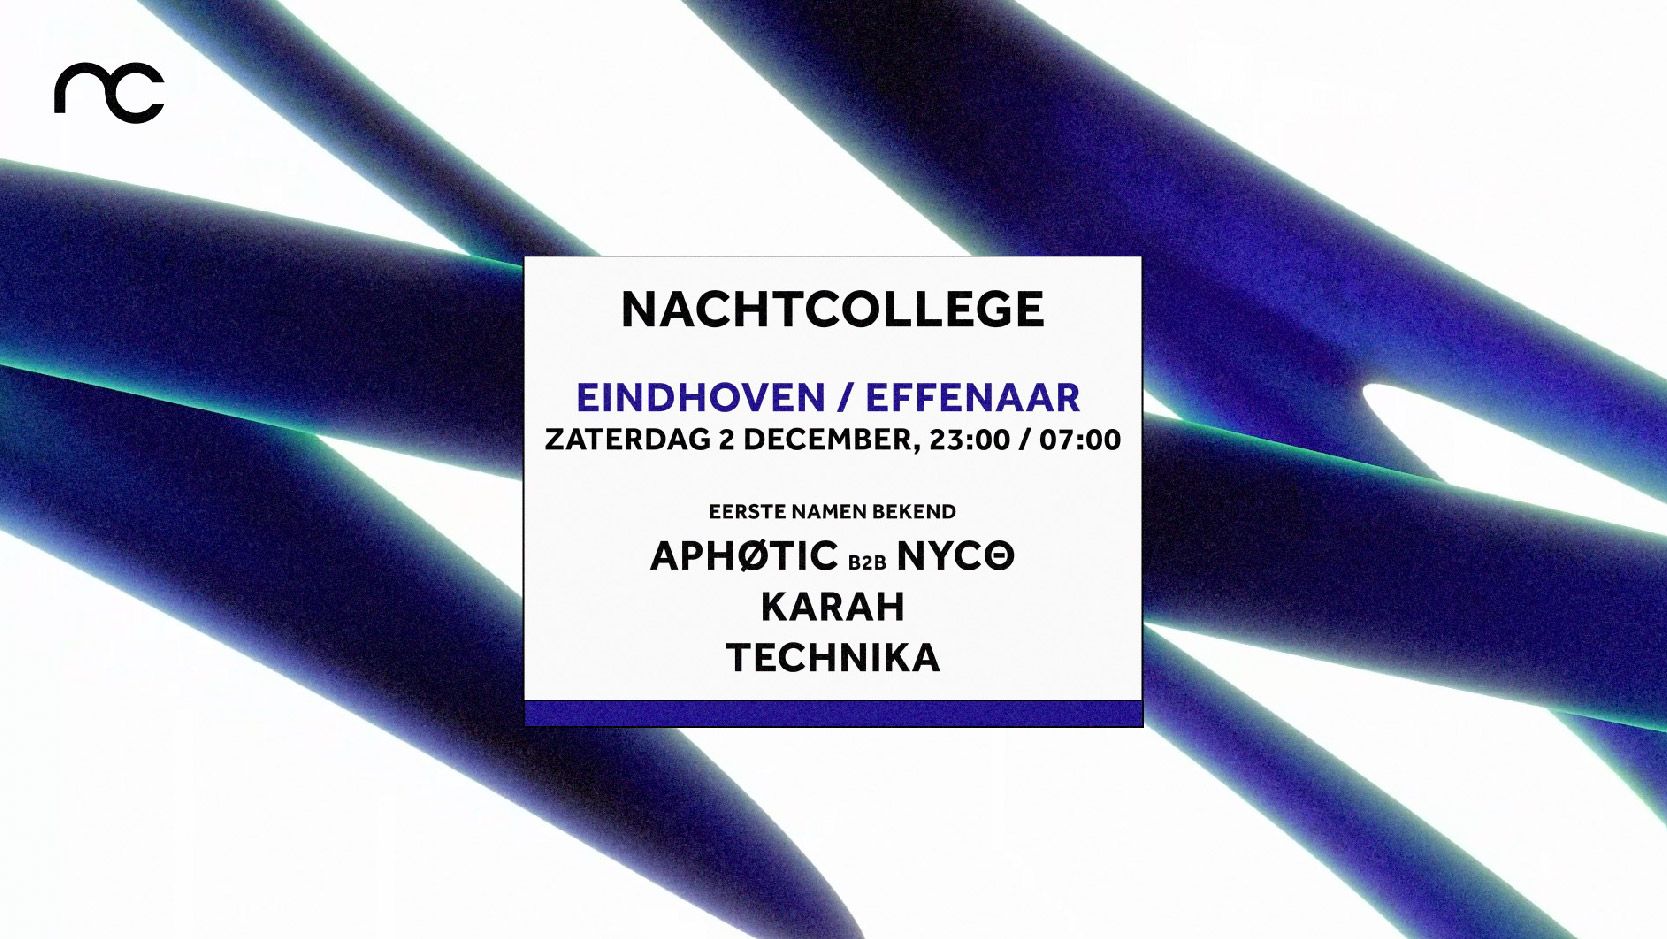 Nachtcollege Eindhoven cover